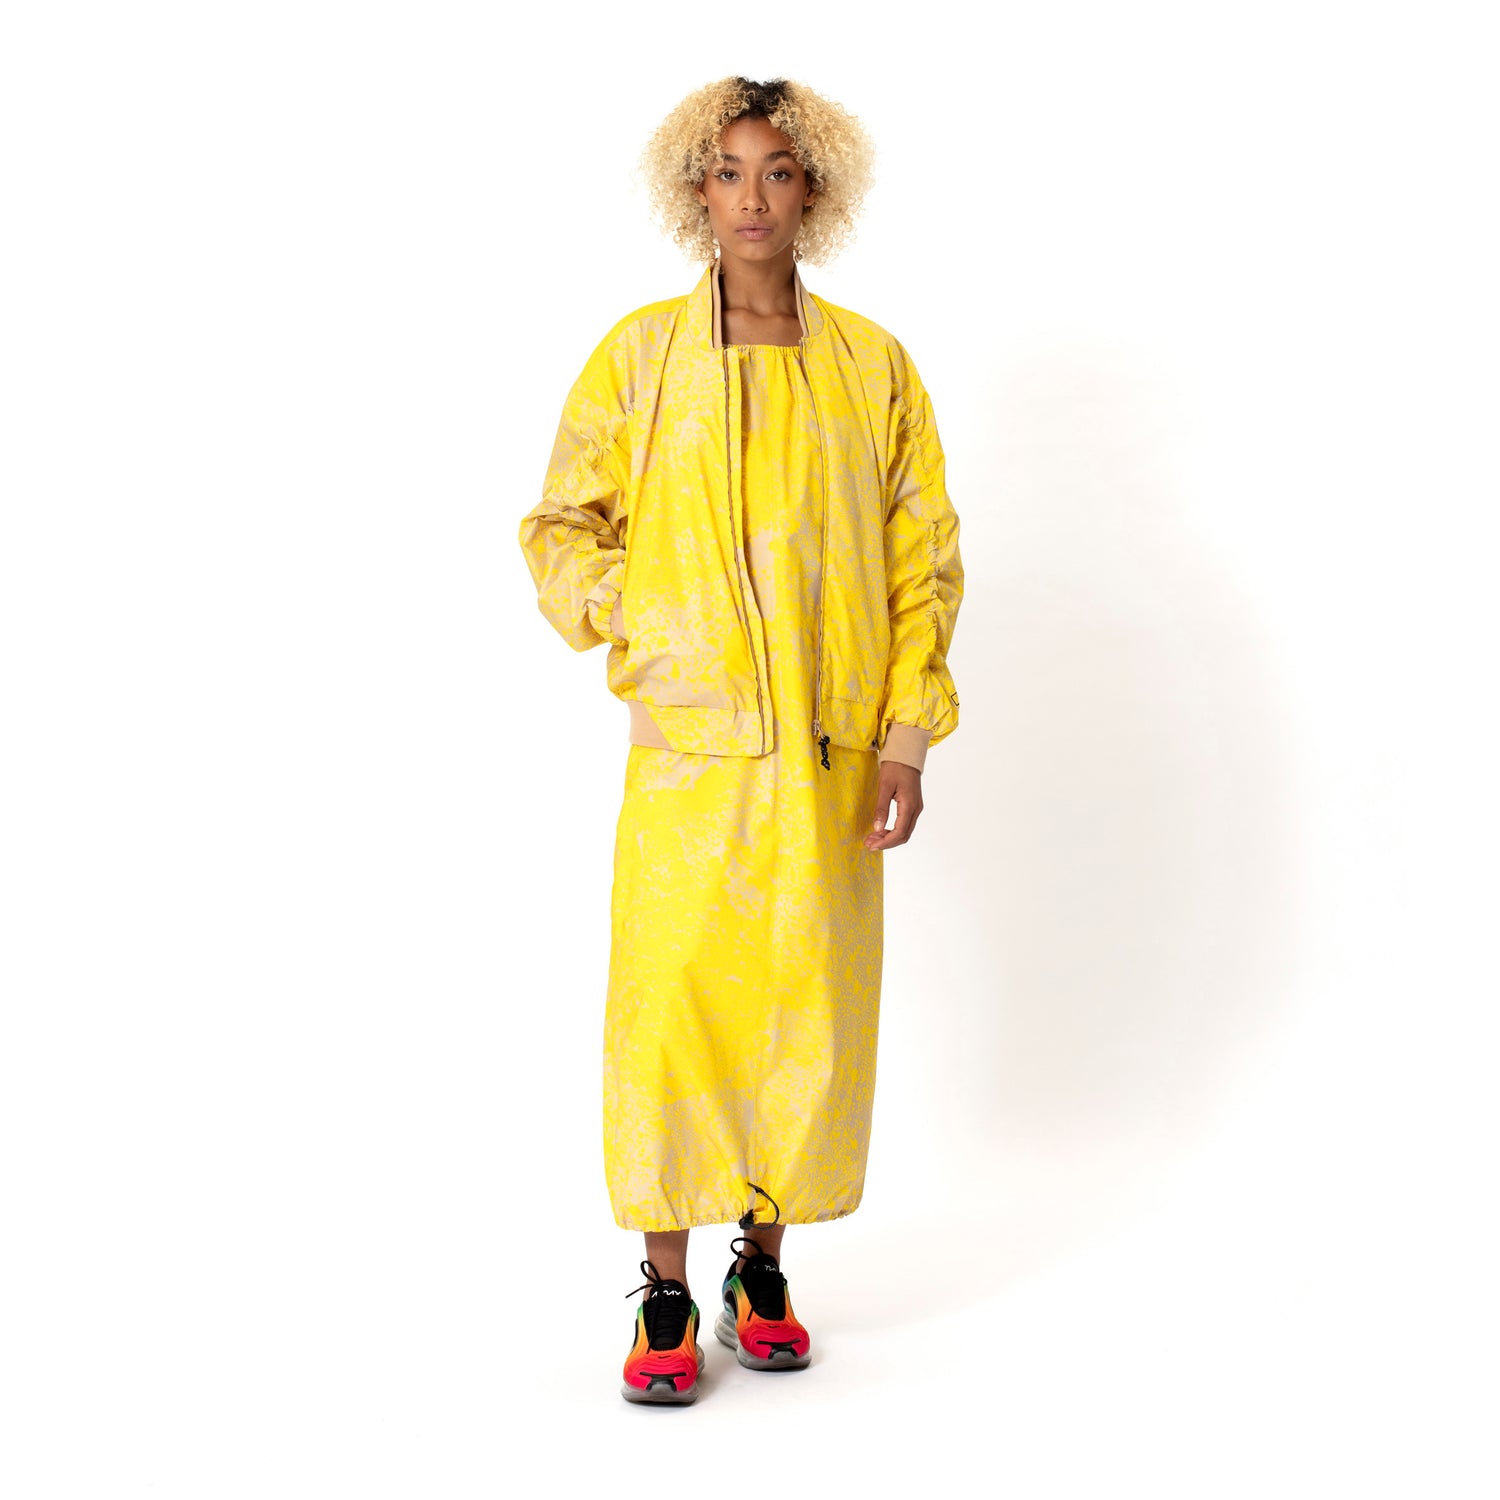 GOFRANCK-BRAVE-Product-Image-women-rainjacket